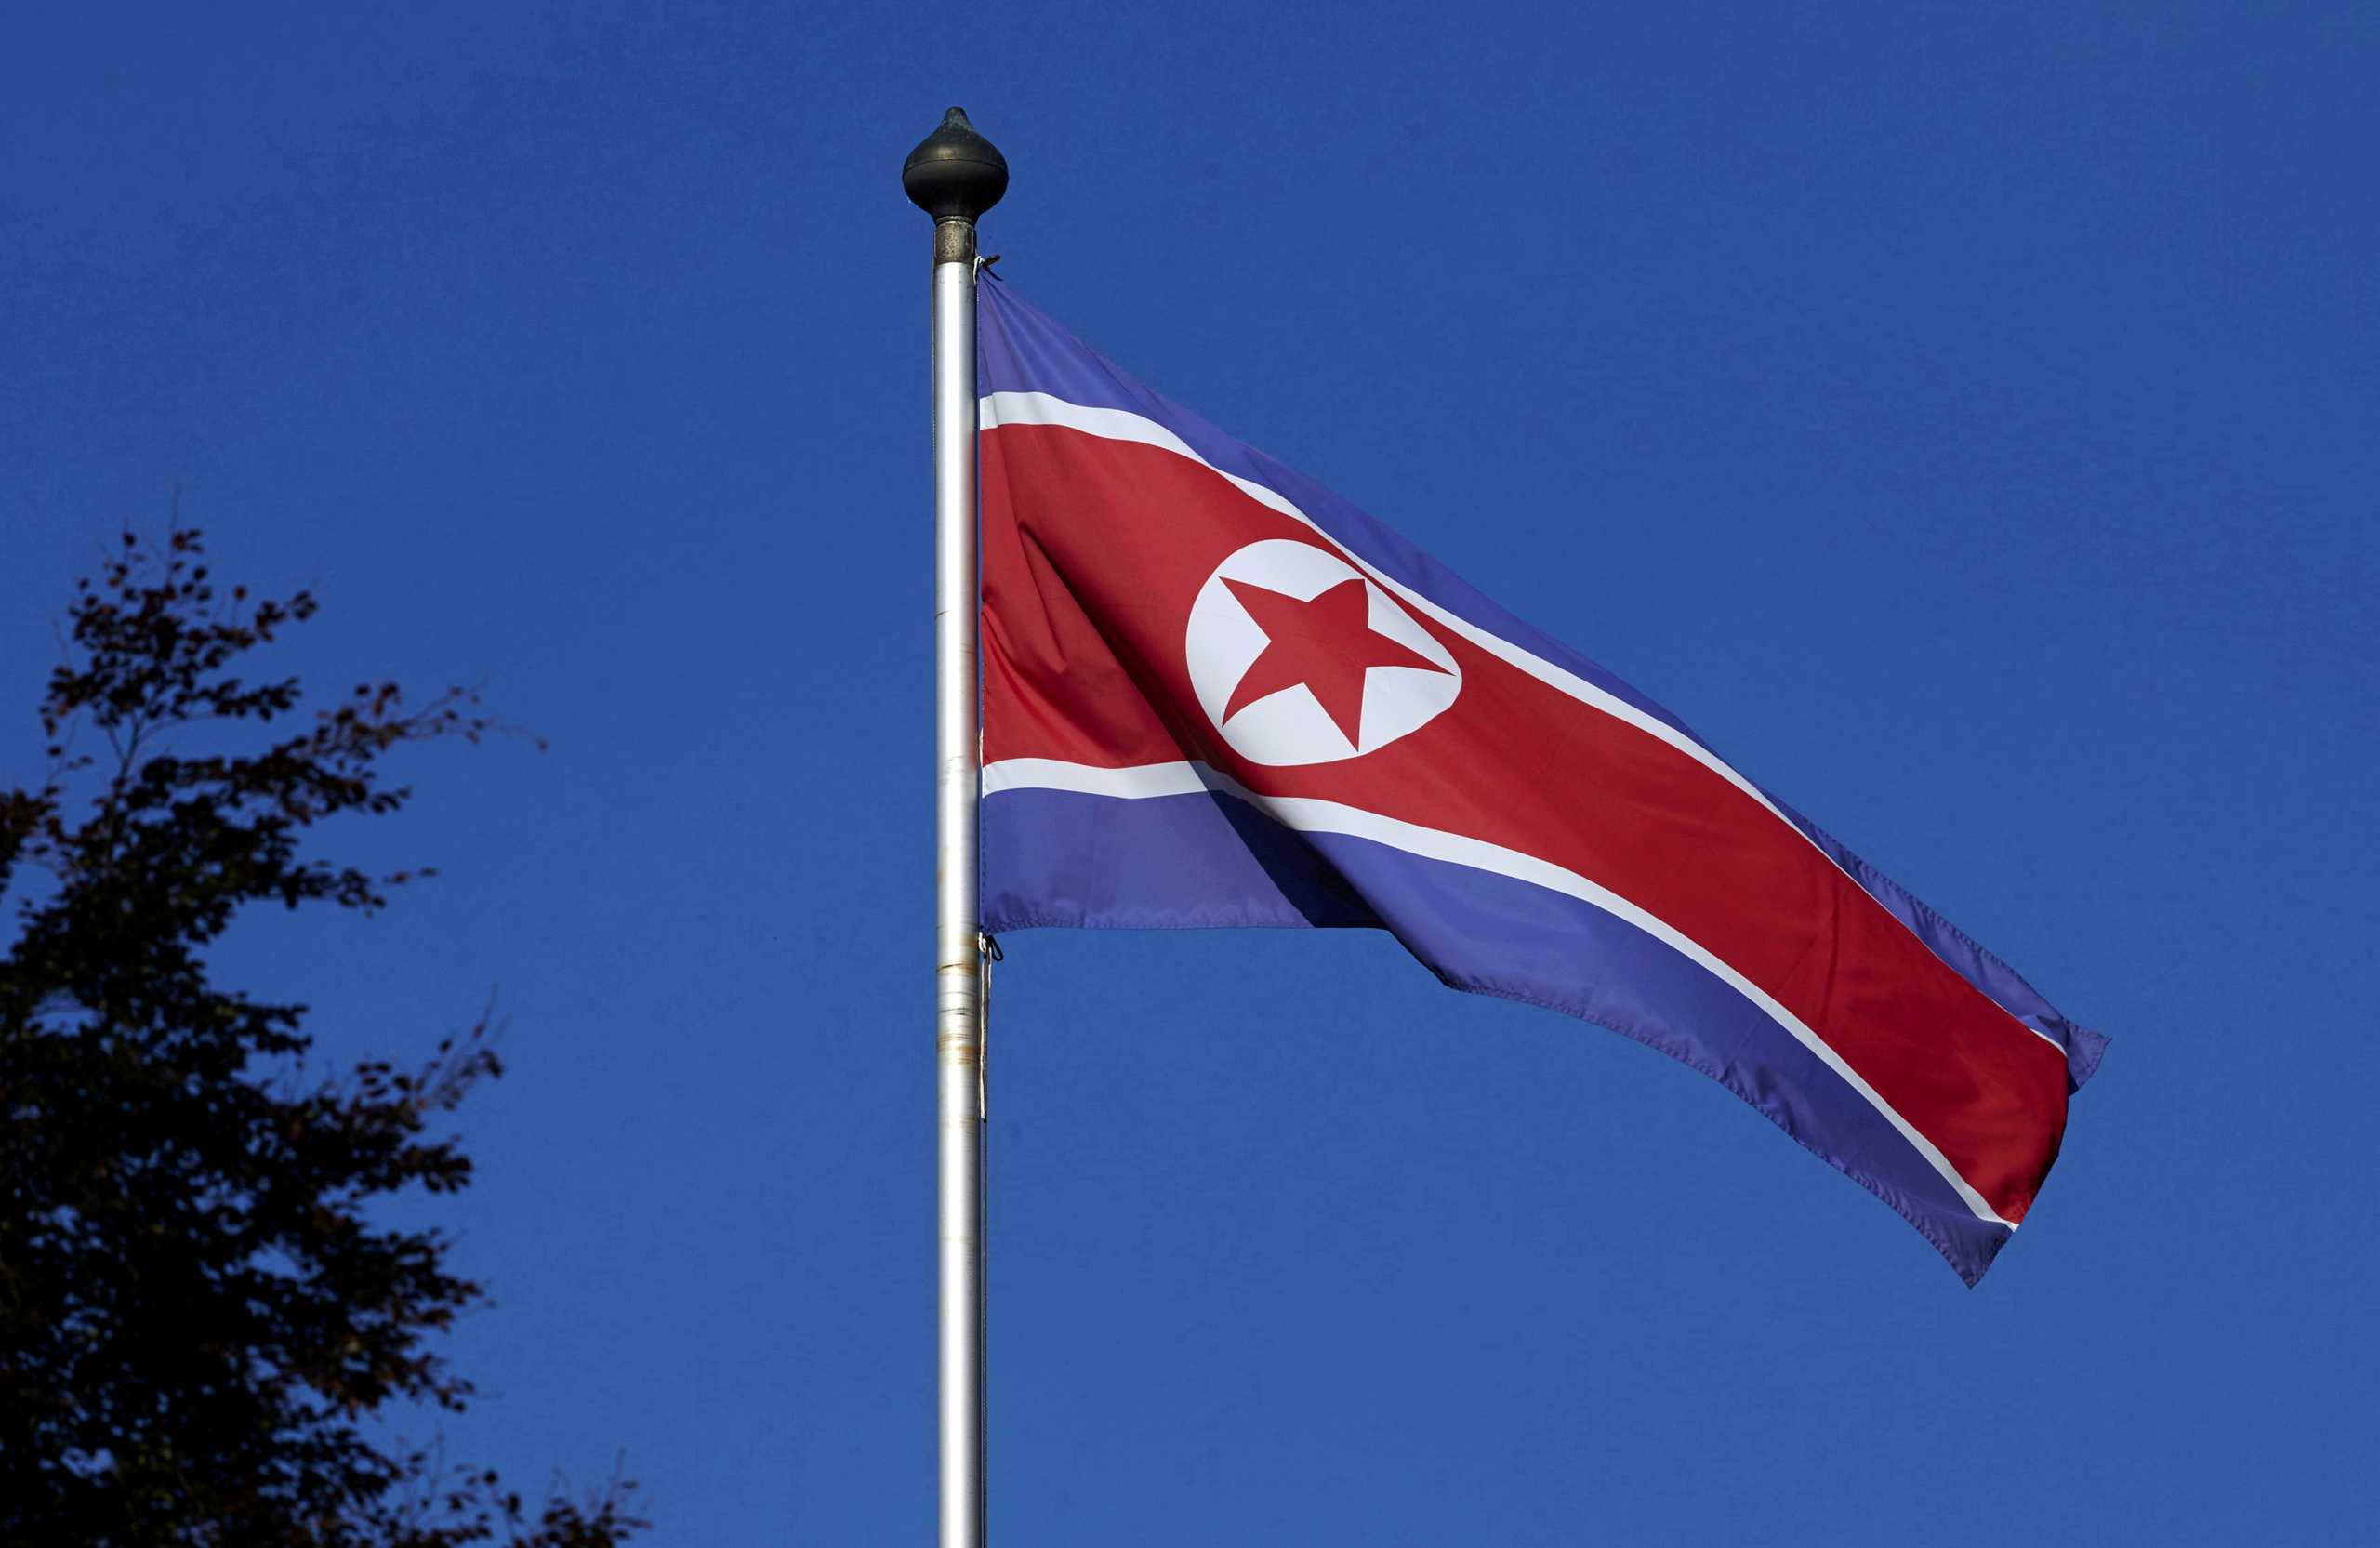 Βόρεια Κορέα: Τα σύνορα παραμένουν κλειστά και μπλοκάρουν βασικά προϊόντα ανθρωπιστικής βοήθειας